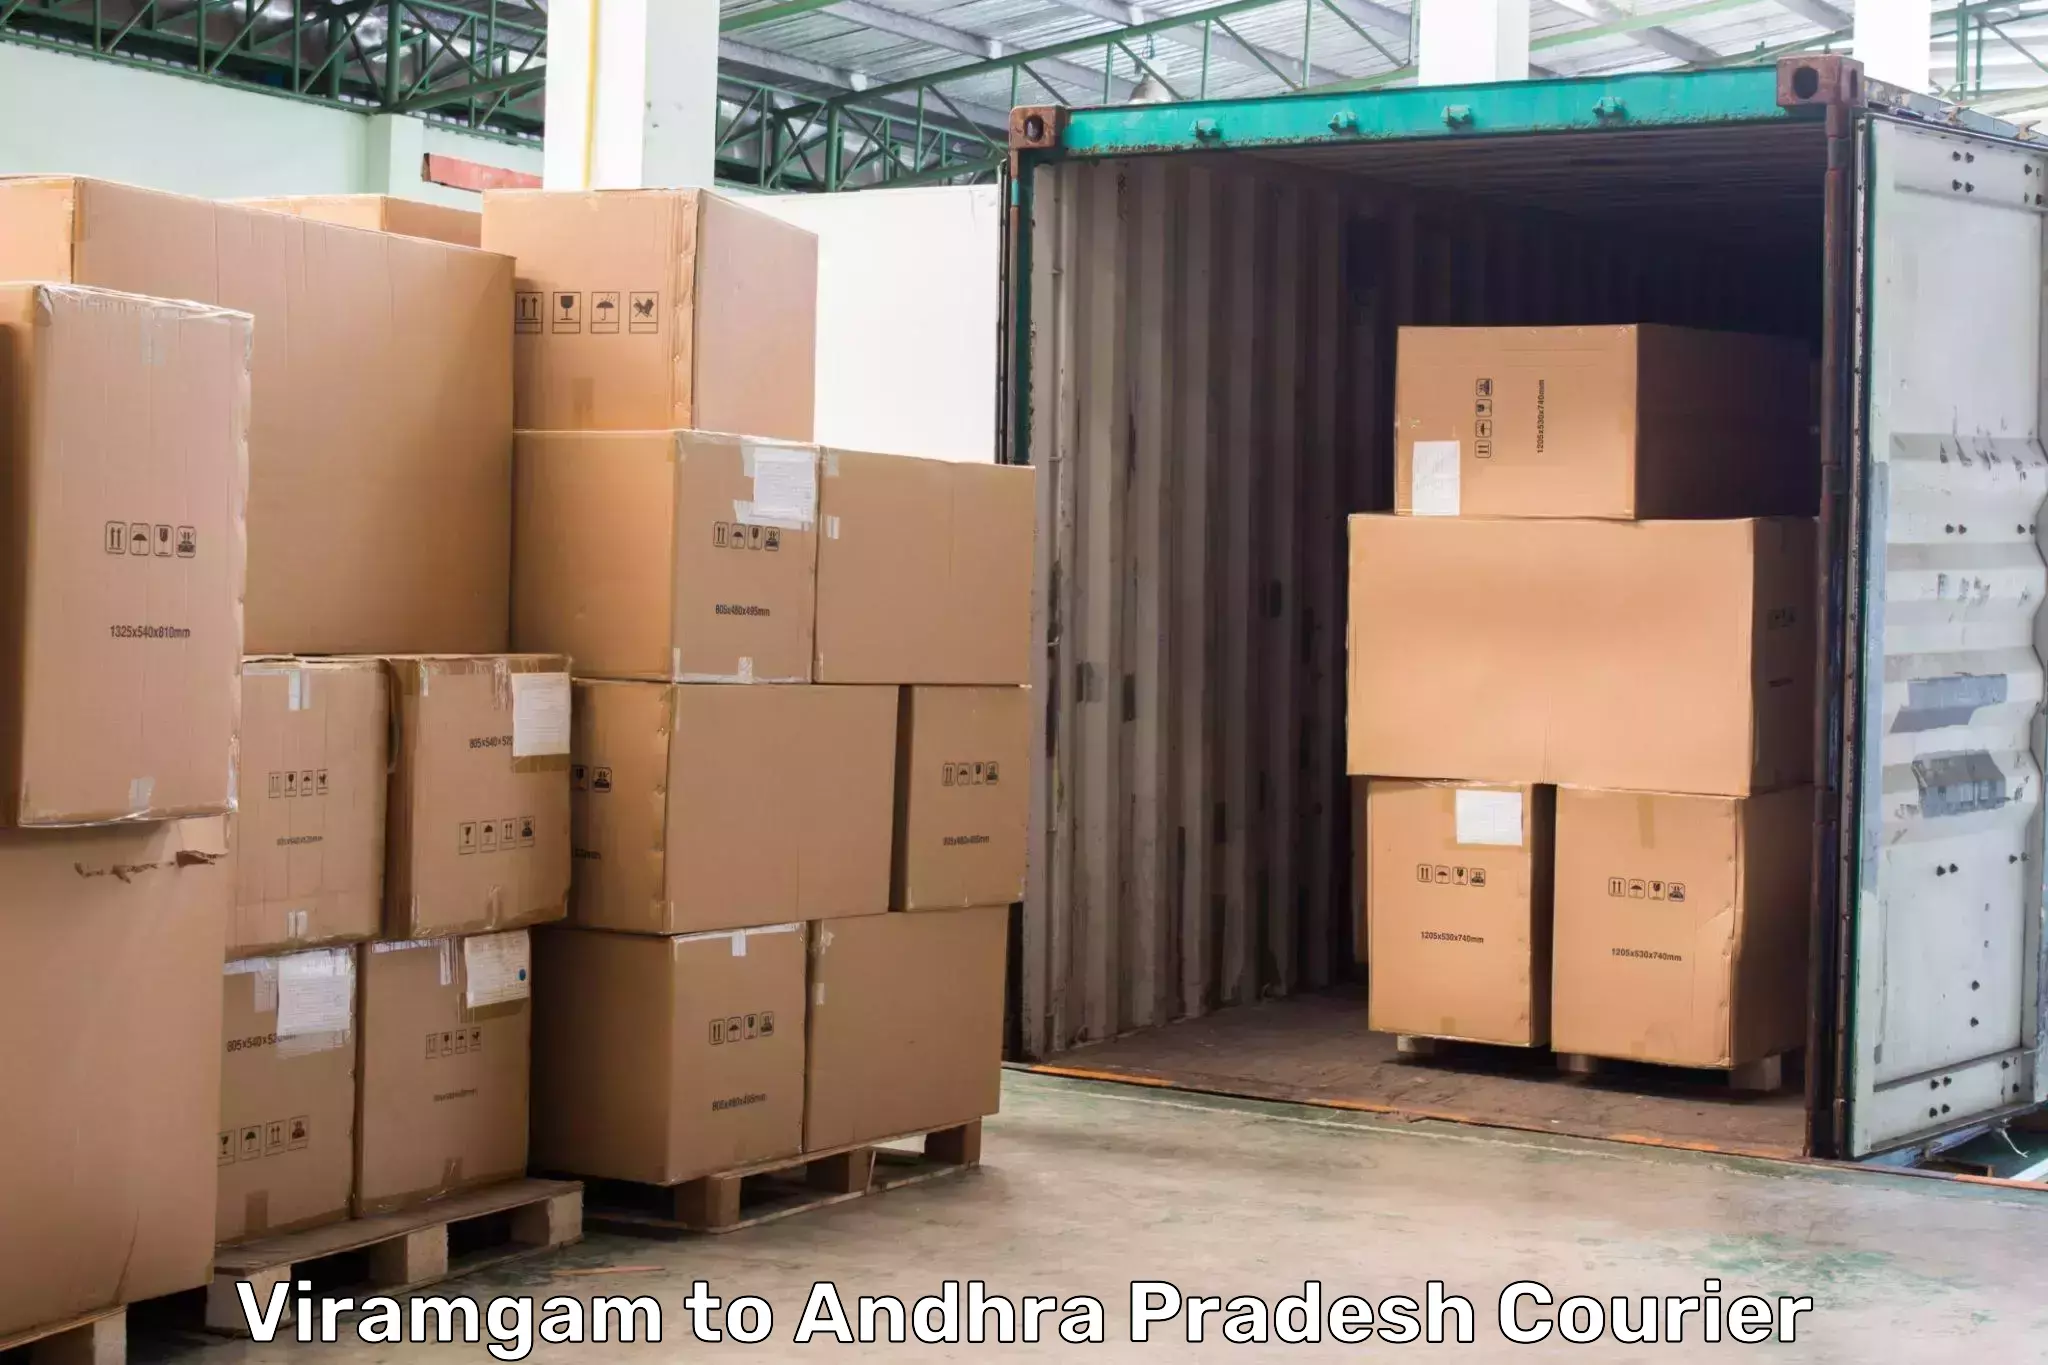 Modern delivery technologies in Viramgam to Kalyandurg